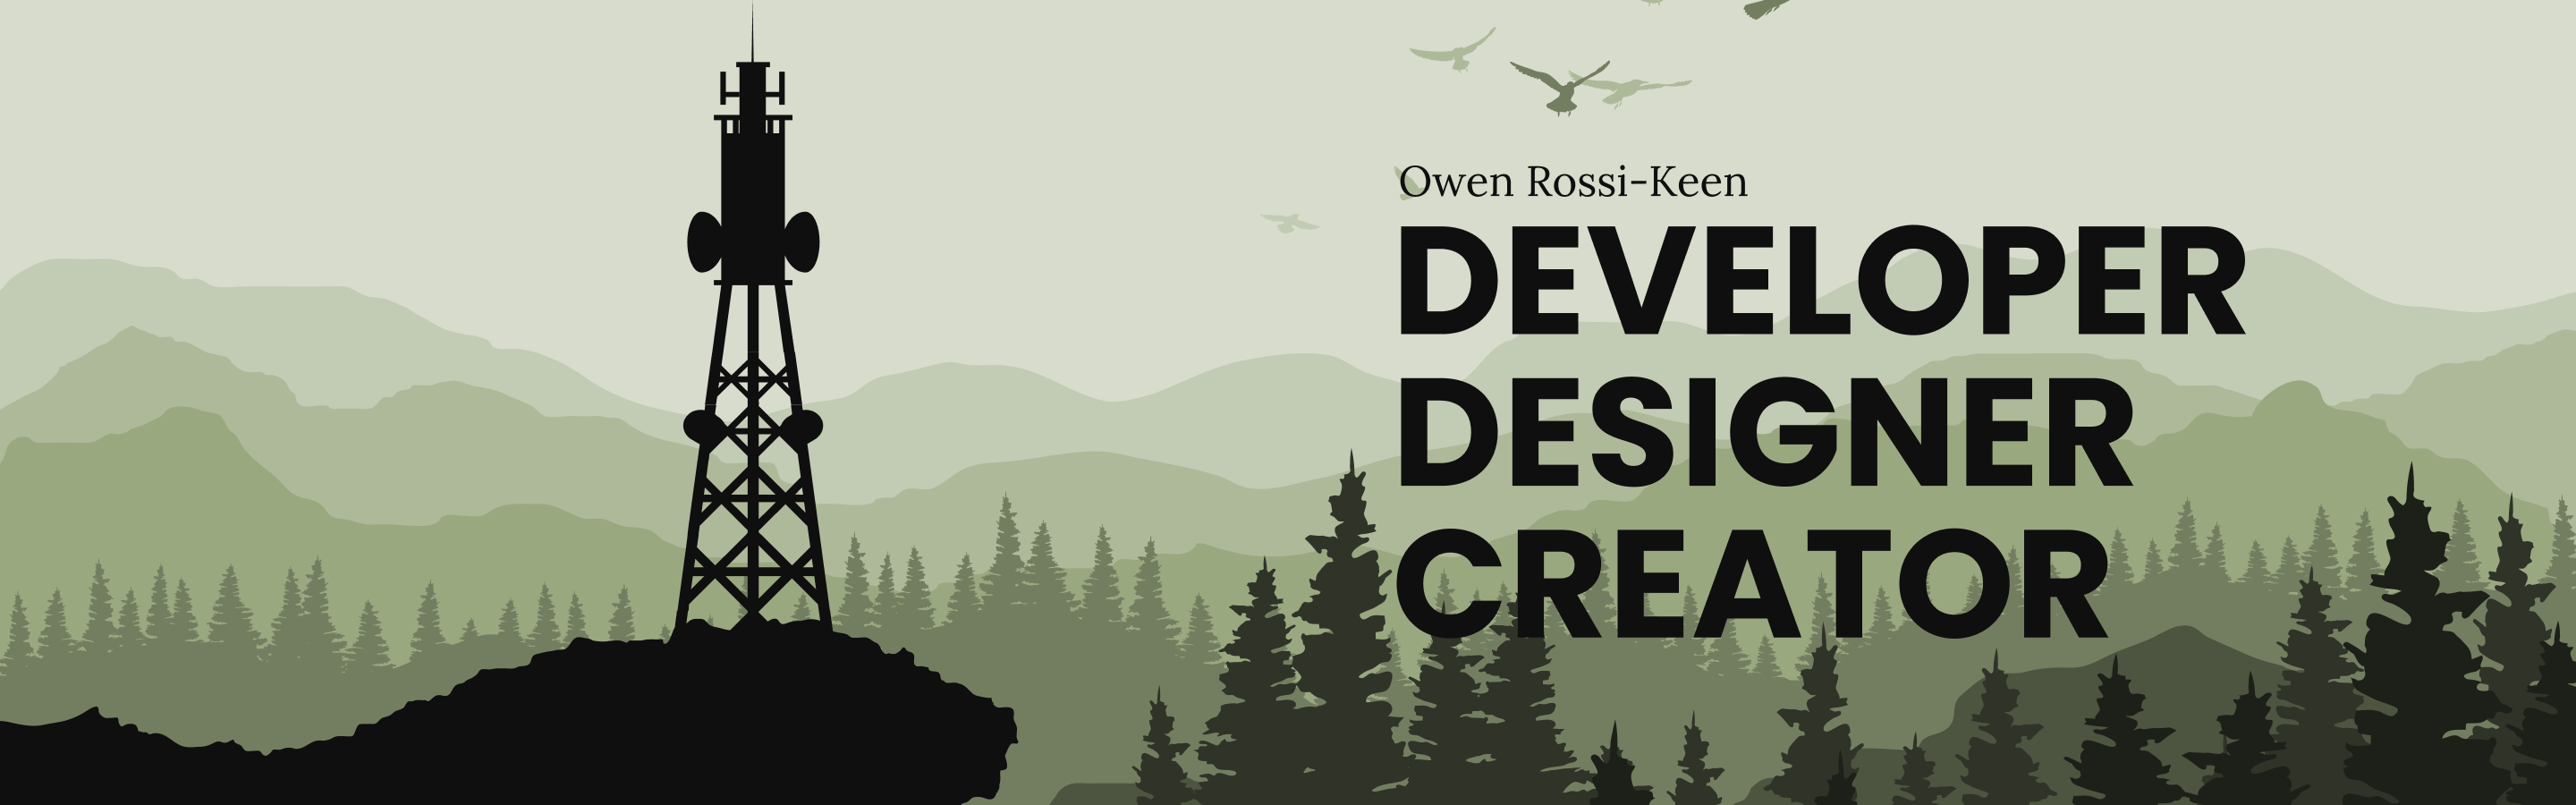 Owen Rossi-Keen. Designer, Developer, Creator.